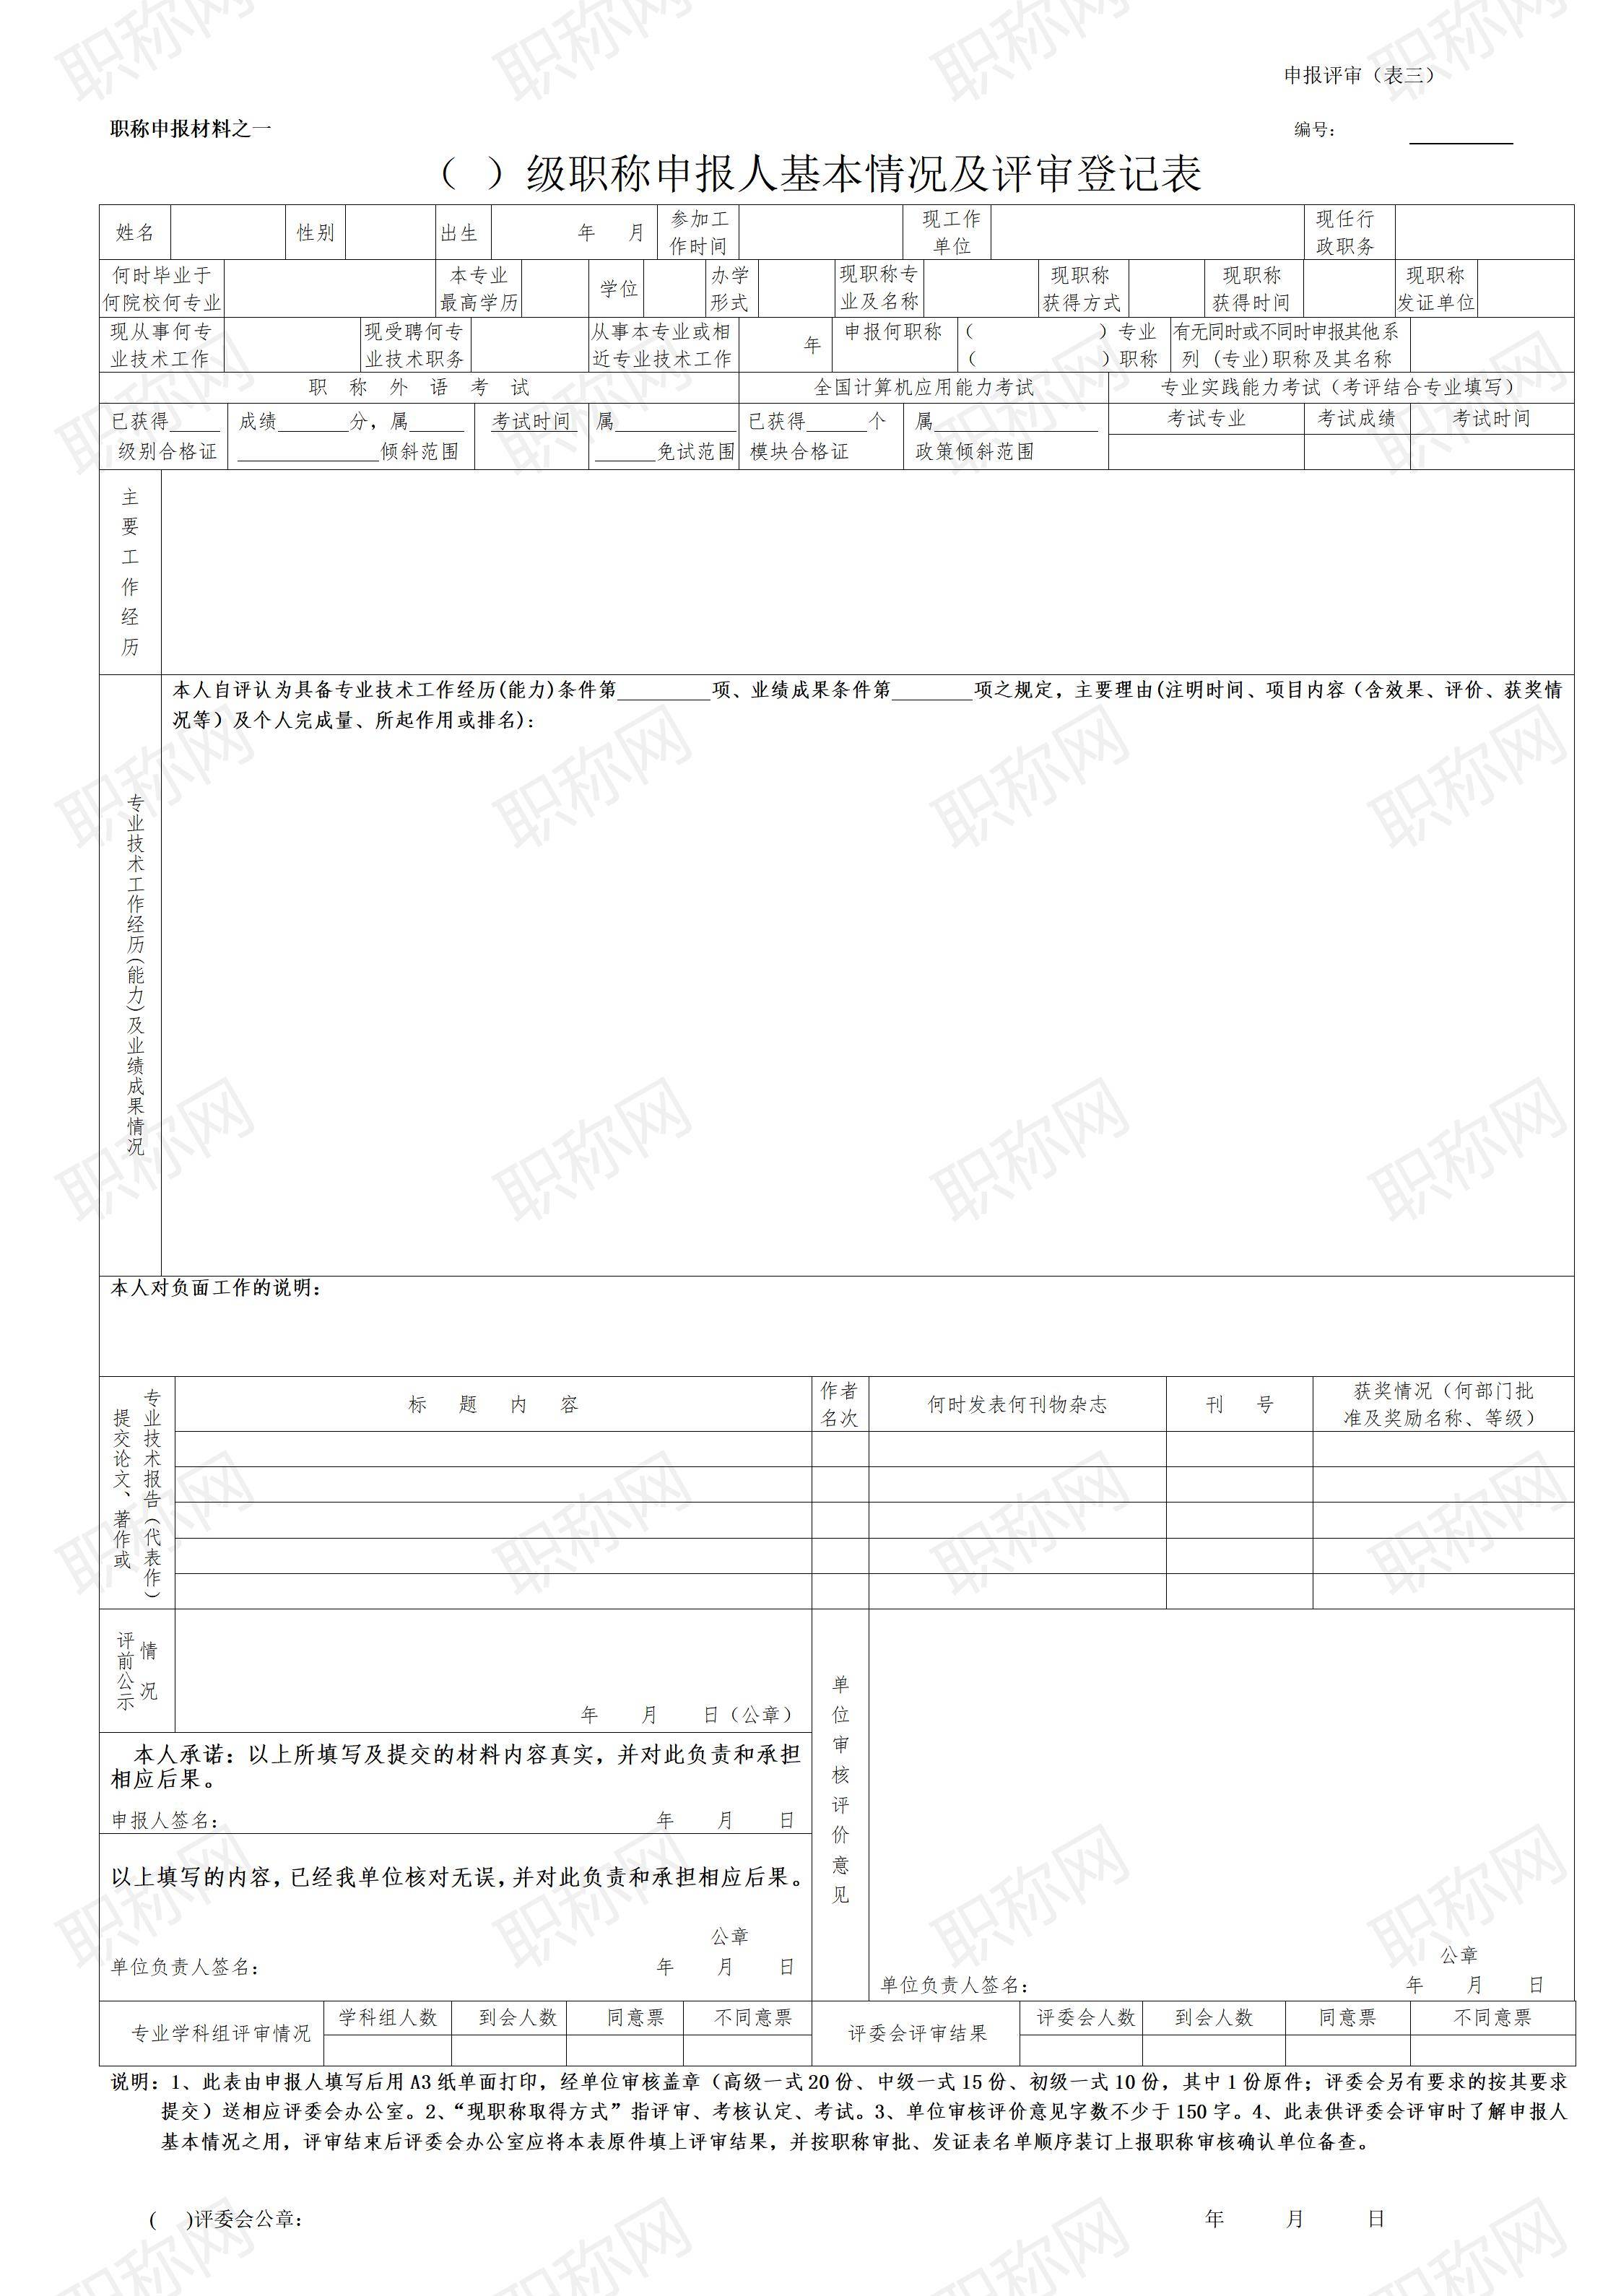 广东省职称申报人基本情况及评审登记表_01.jpg